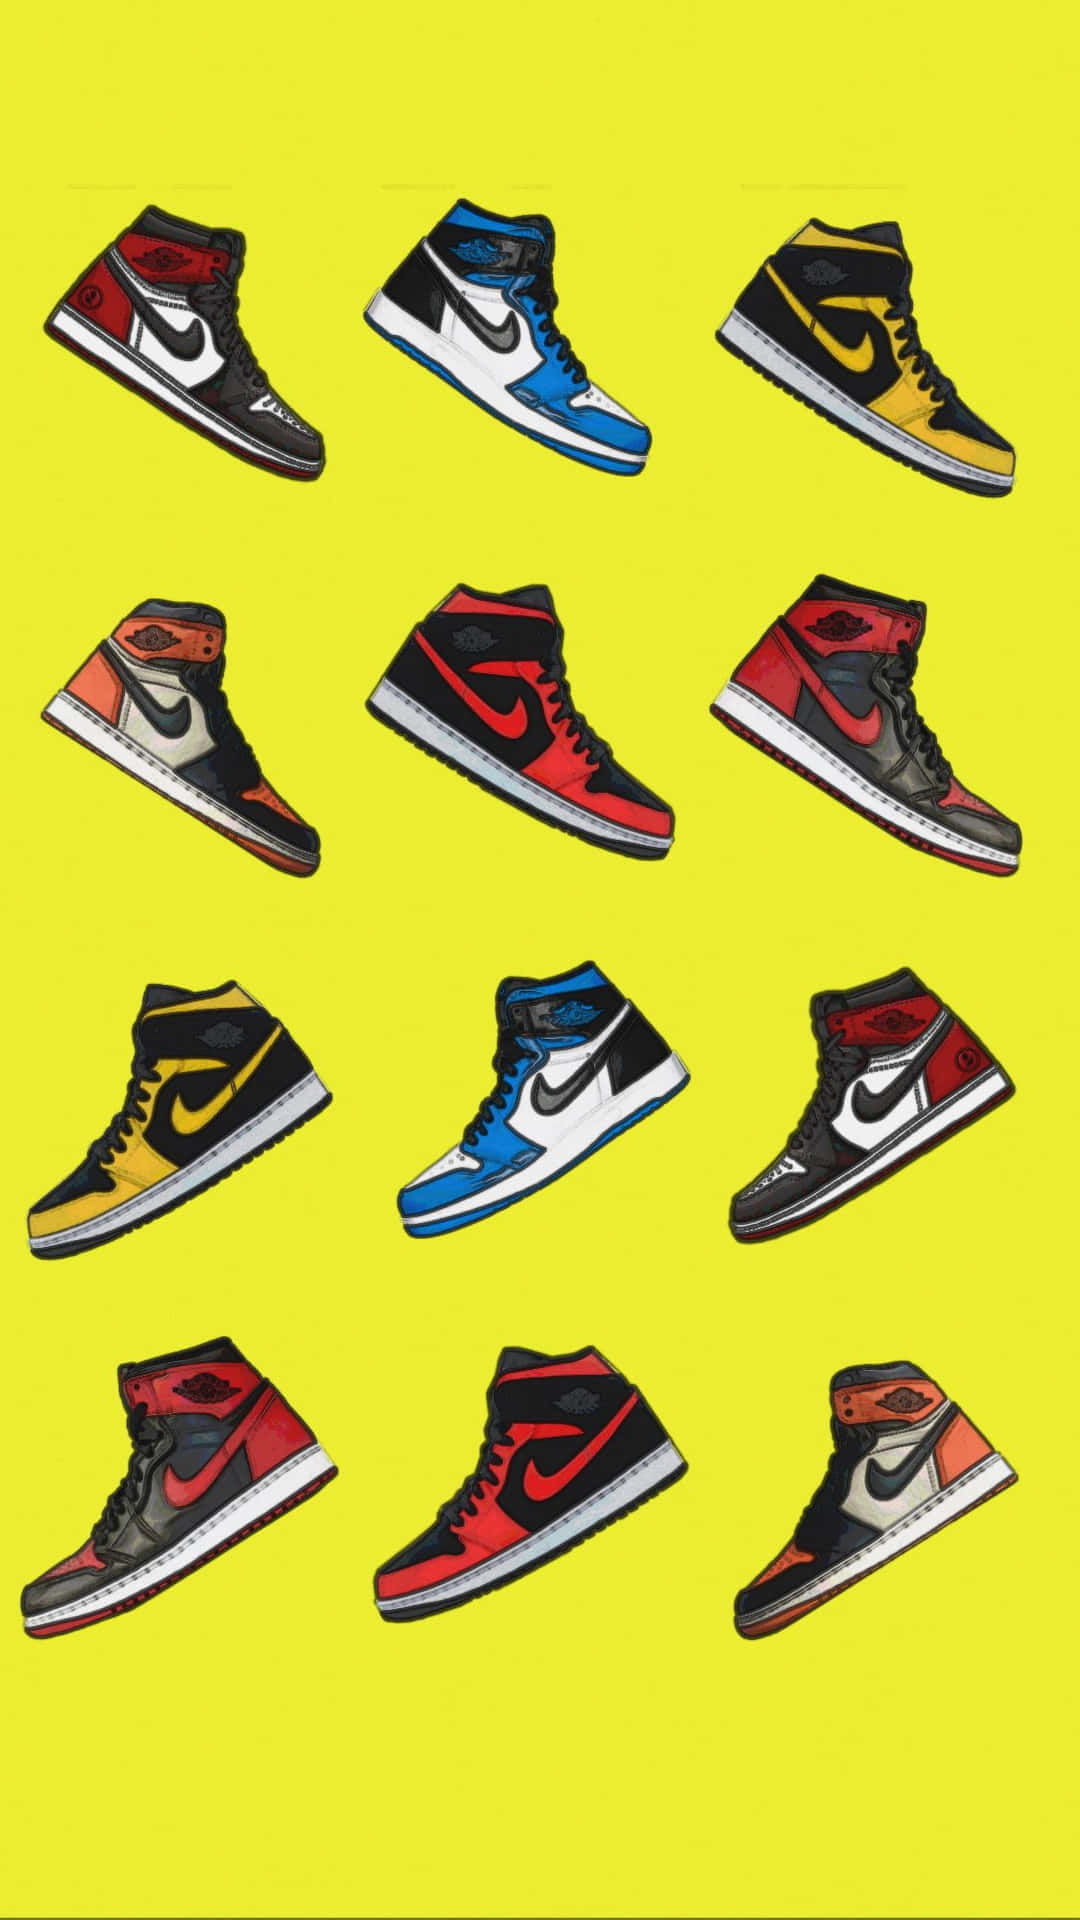 Flyd på dine fødder med gule Jordan-sneakers. Wallpaper